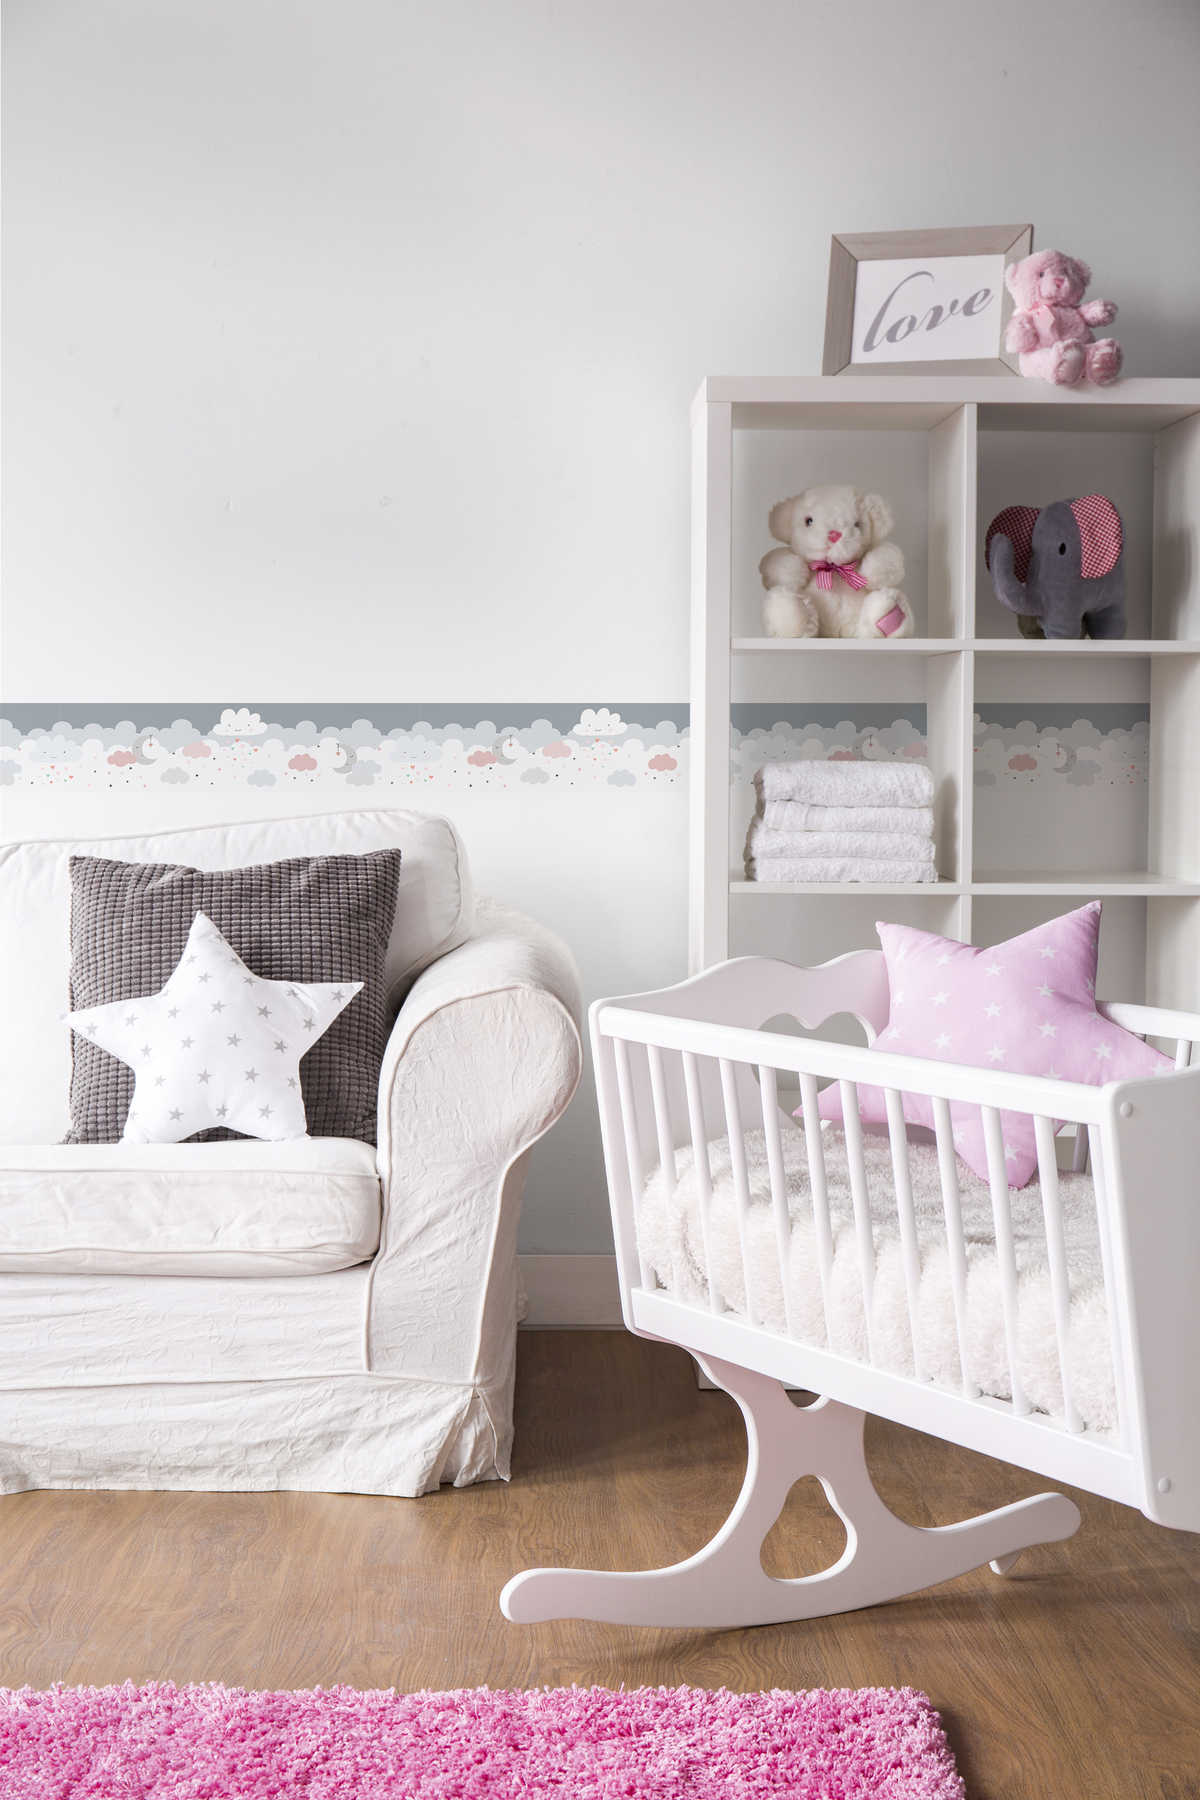             Bordure autocollante pour chambre de bébé "Nuages de sucre roses" - rose, gris, blanc
        